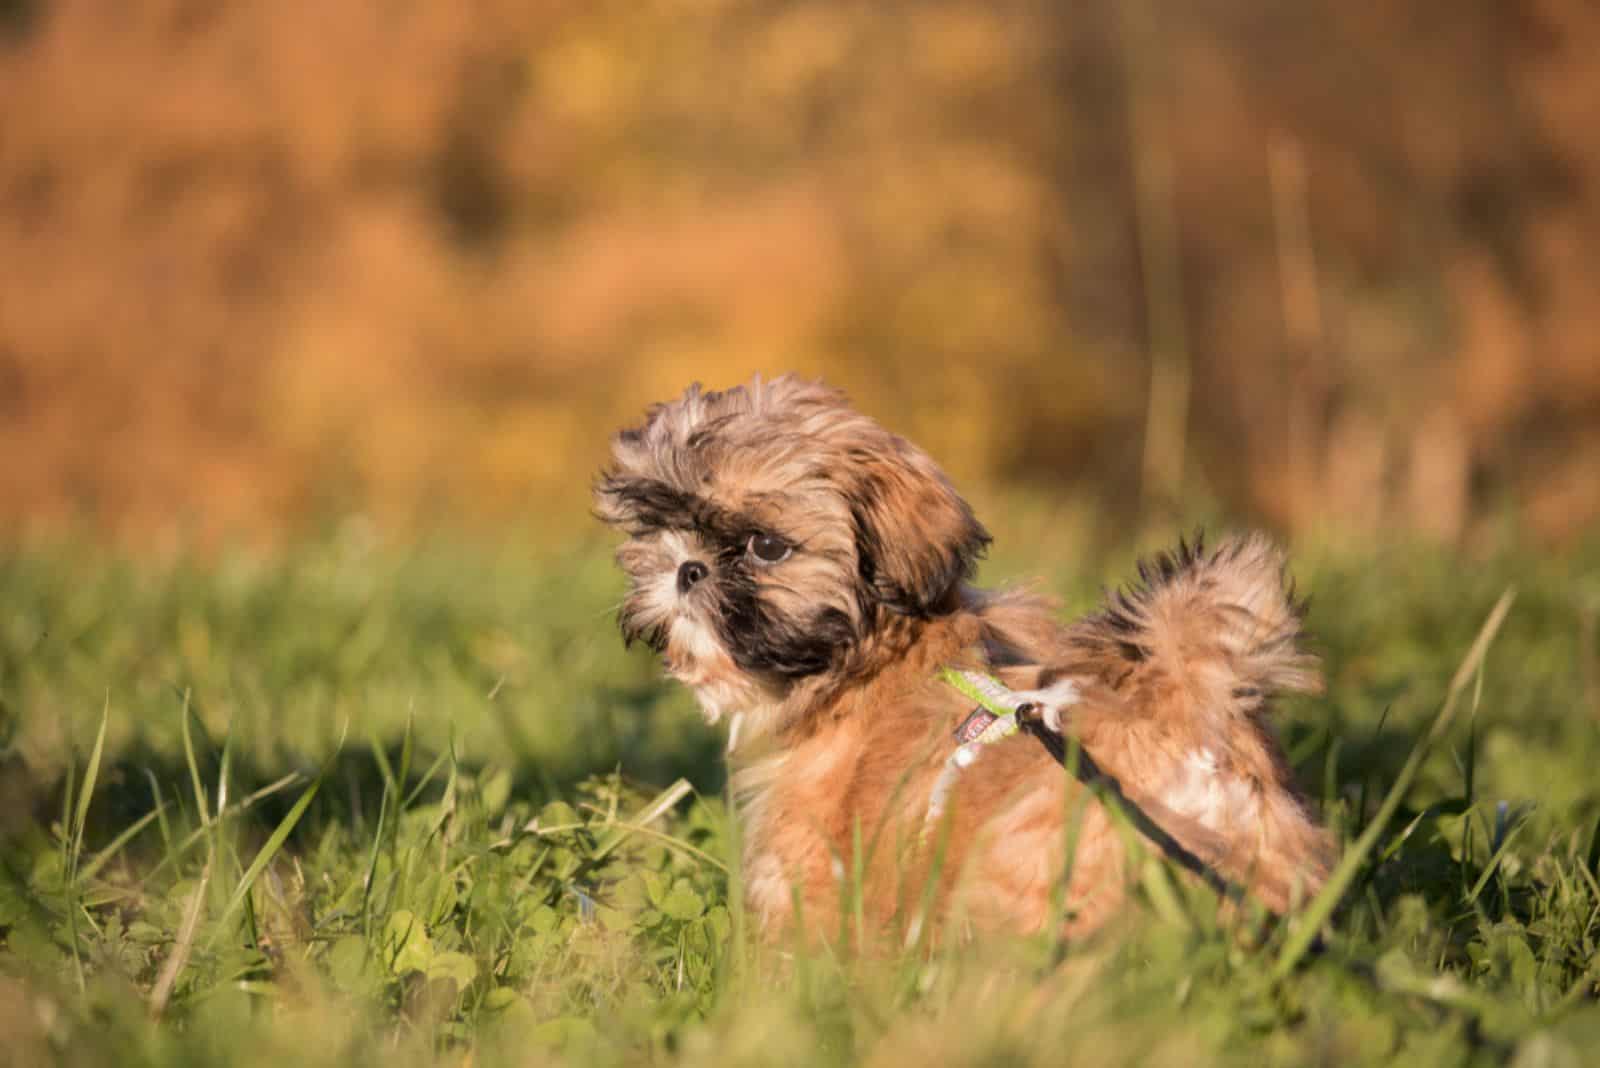 Little Shih Tzu puppy in a meadow